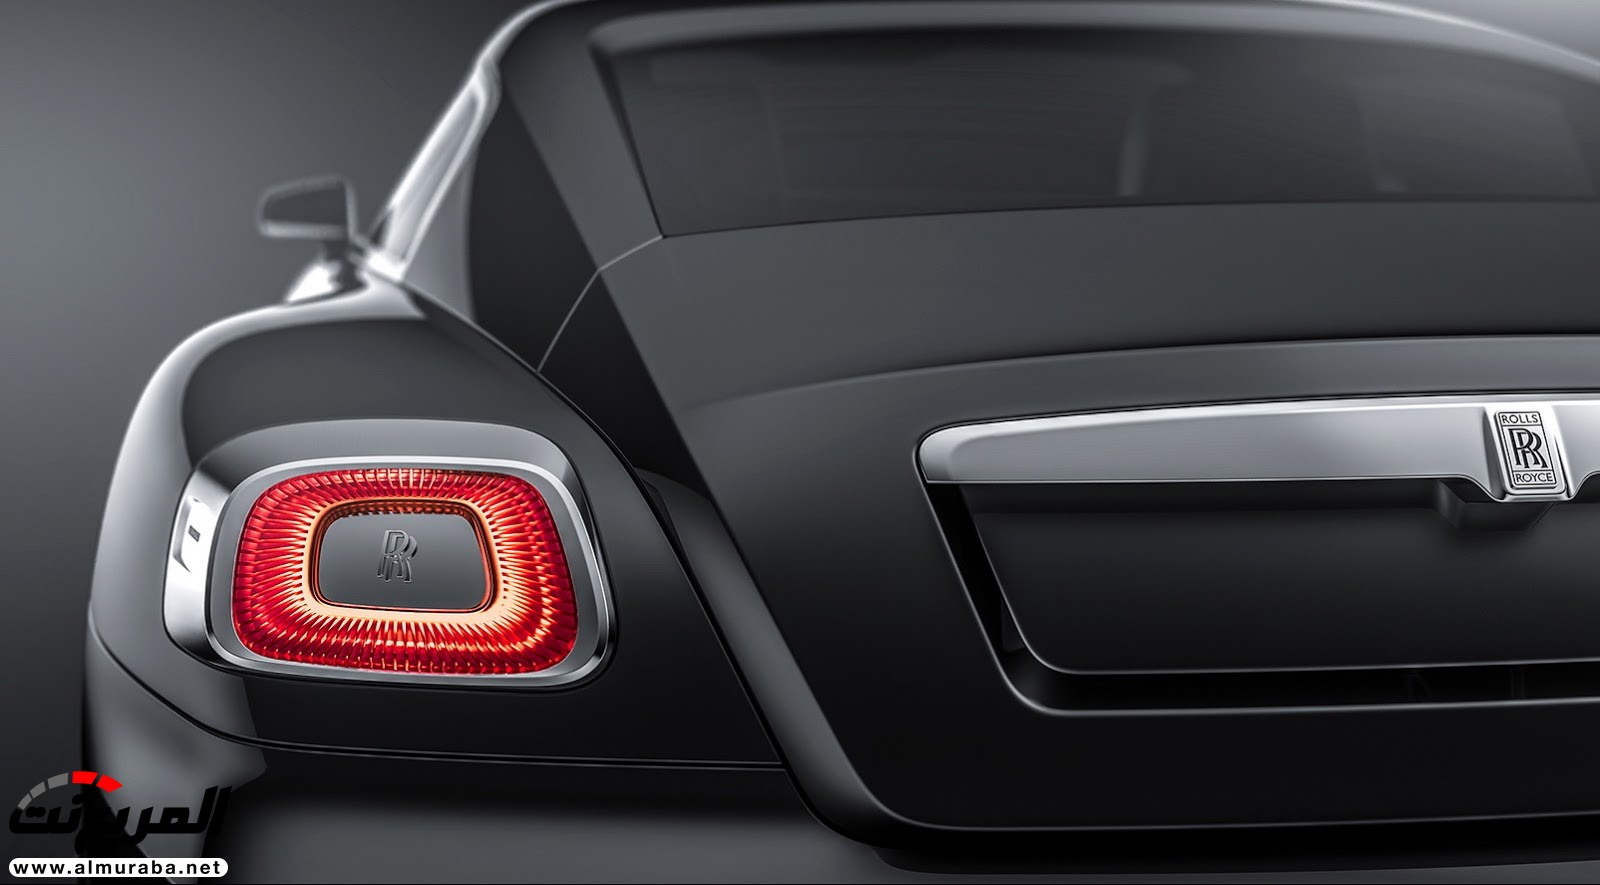 "صور افتراضية" لما يمكن أن تبدو عليه "رولز رويس" رايث كوبيه 2020 Rolls-Royce Wraith Coupe 75